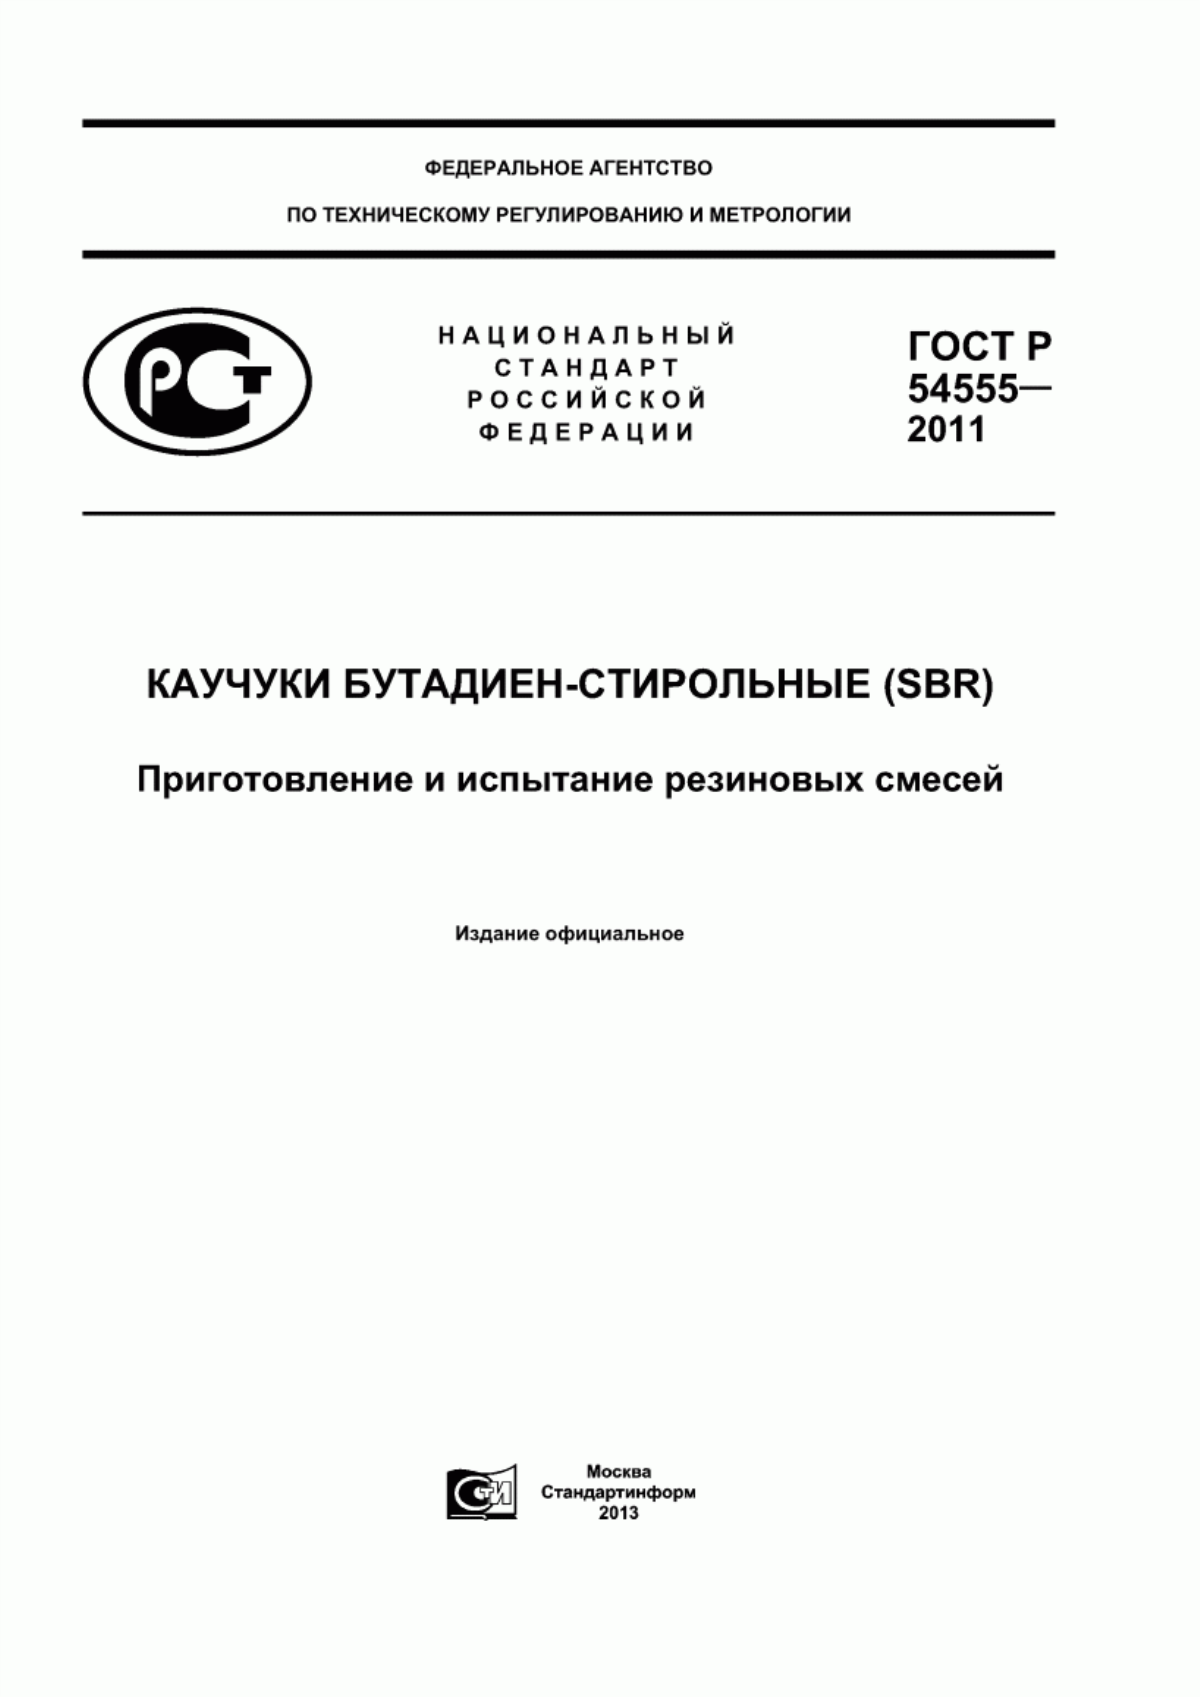 ГОСТ Р 54555-2011 Каучуки бутадиен-стирольные (SBR). Приготовление и испытание резиновых смесей